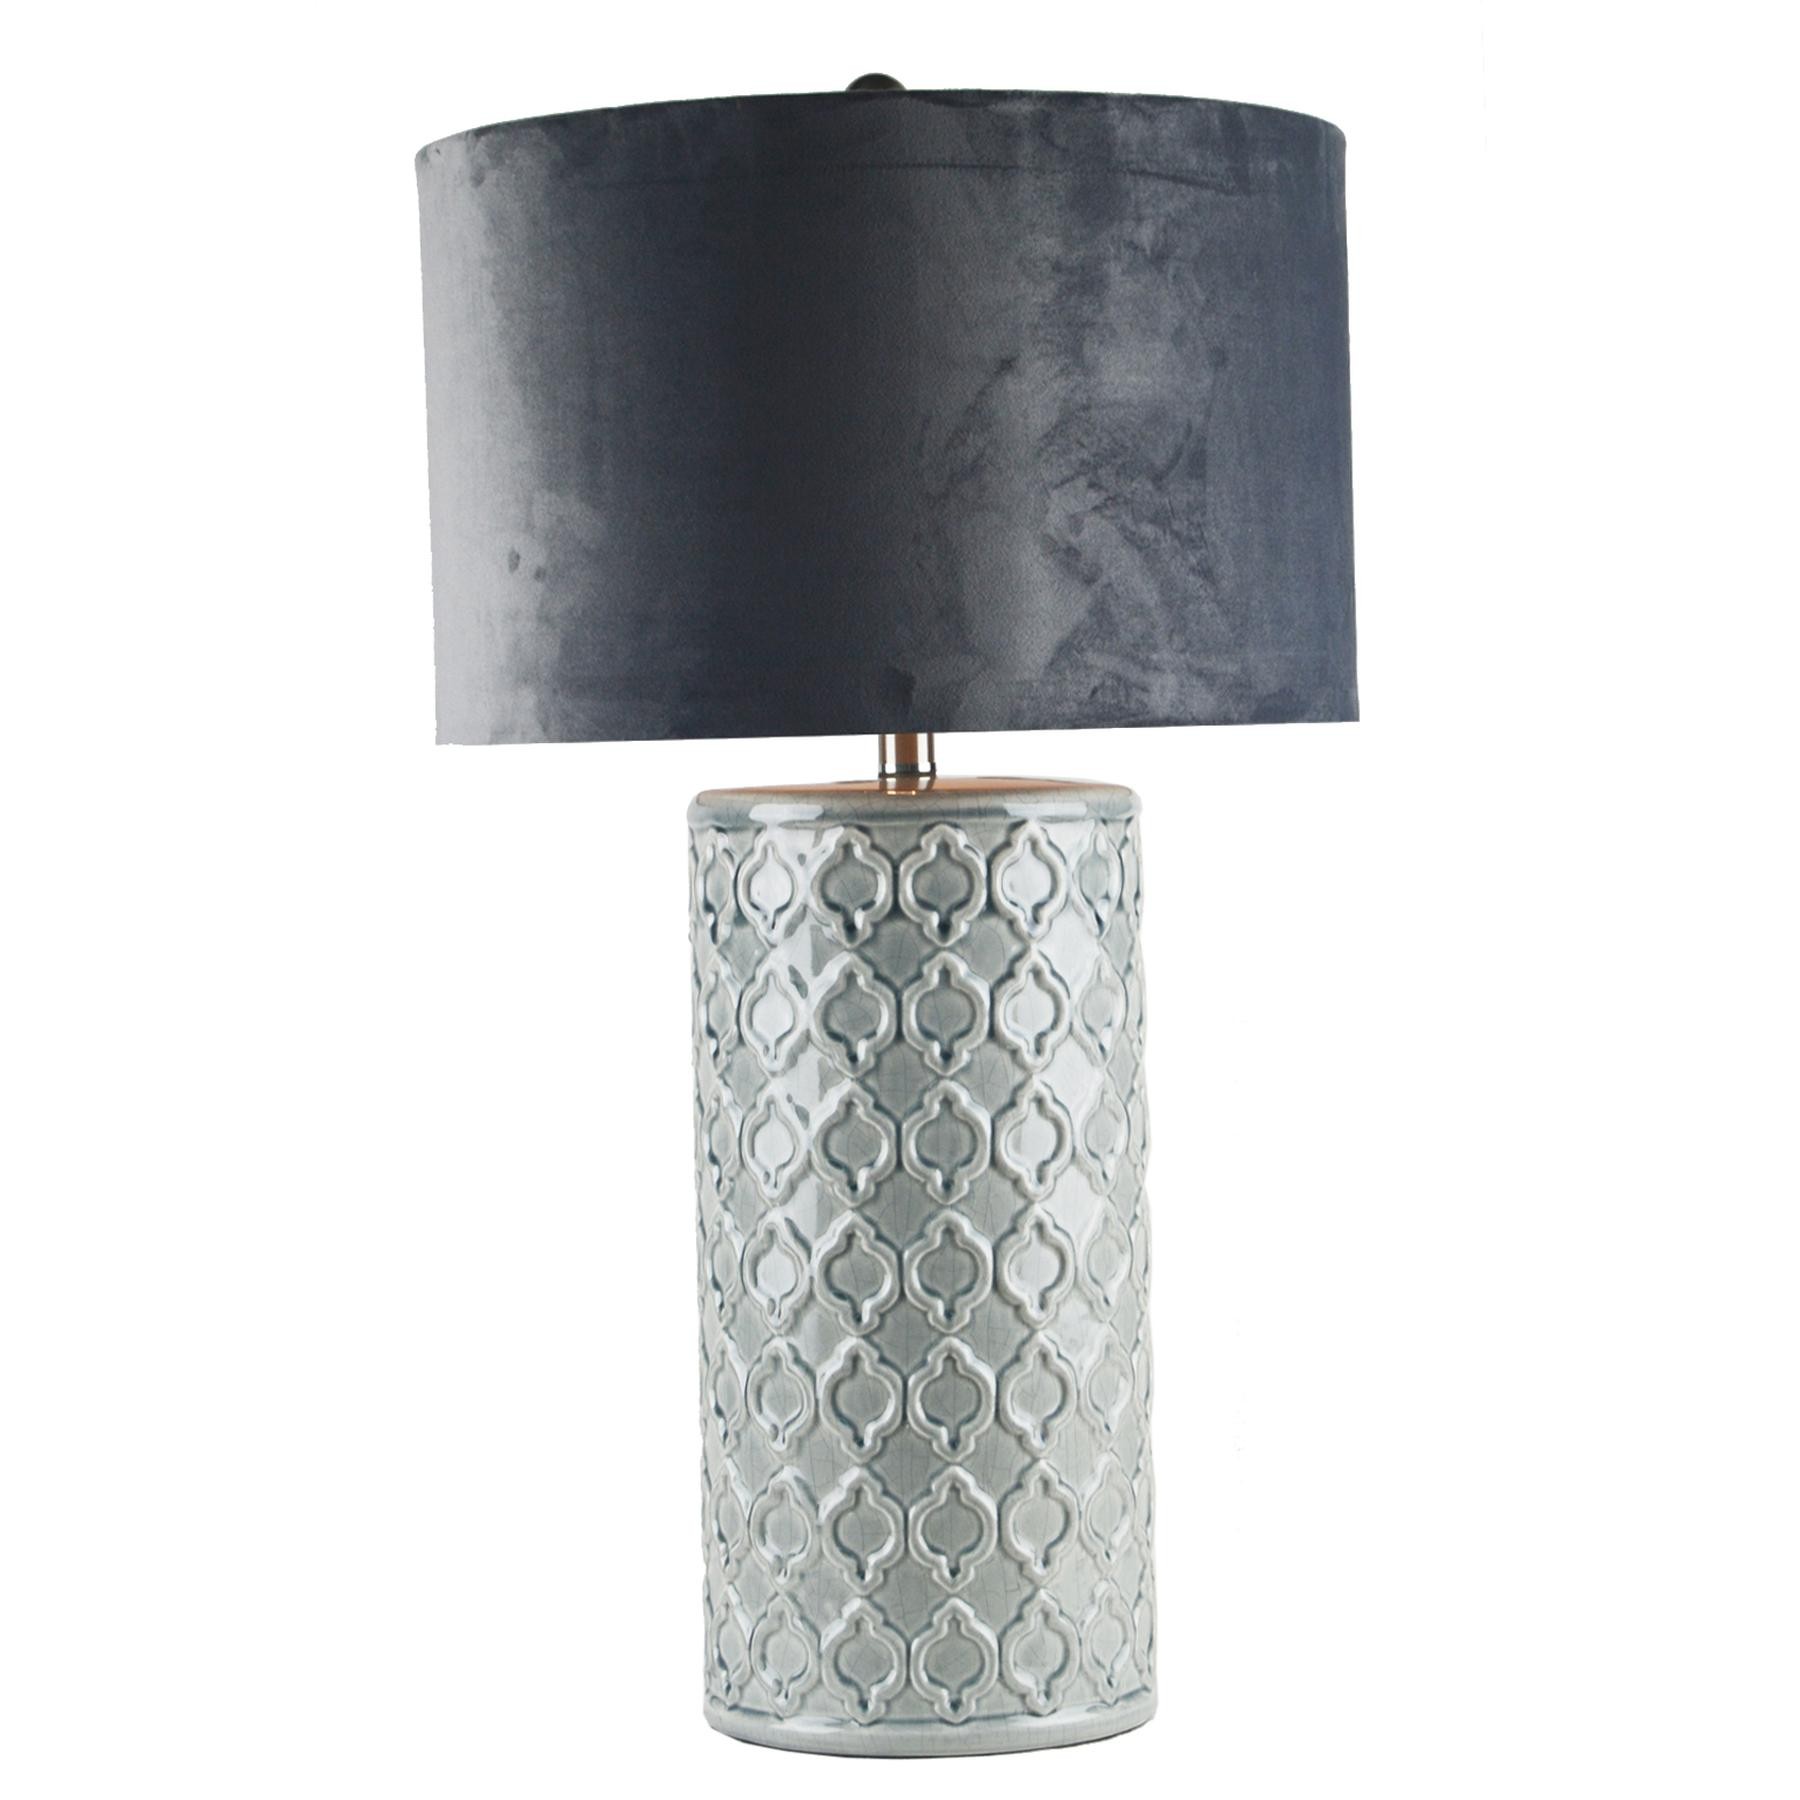 Luxusní a designové stolní lampy